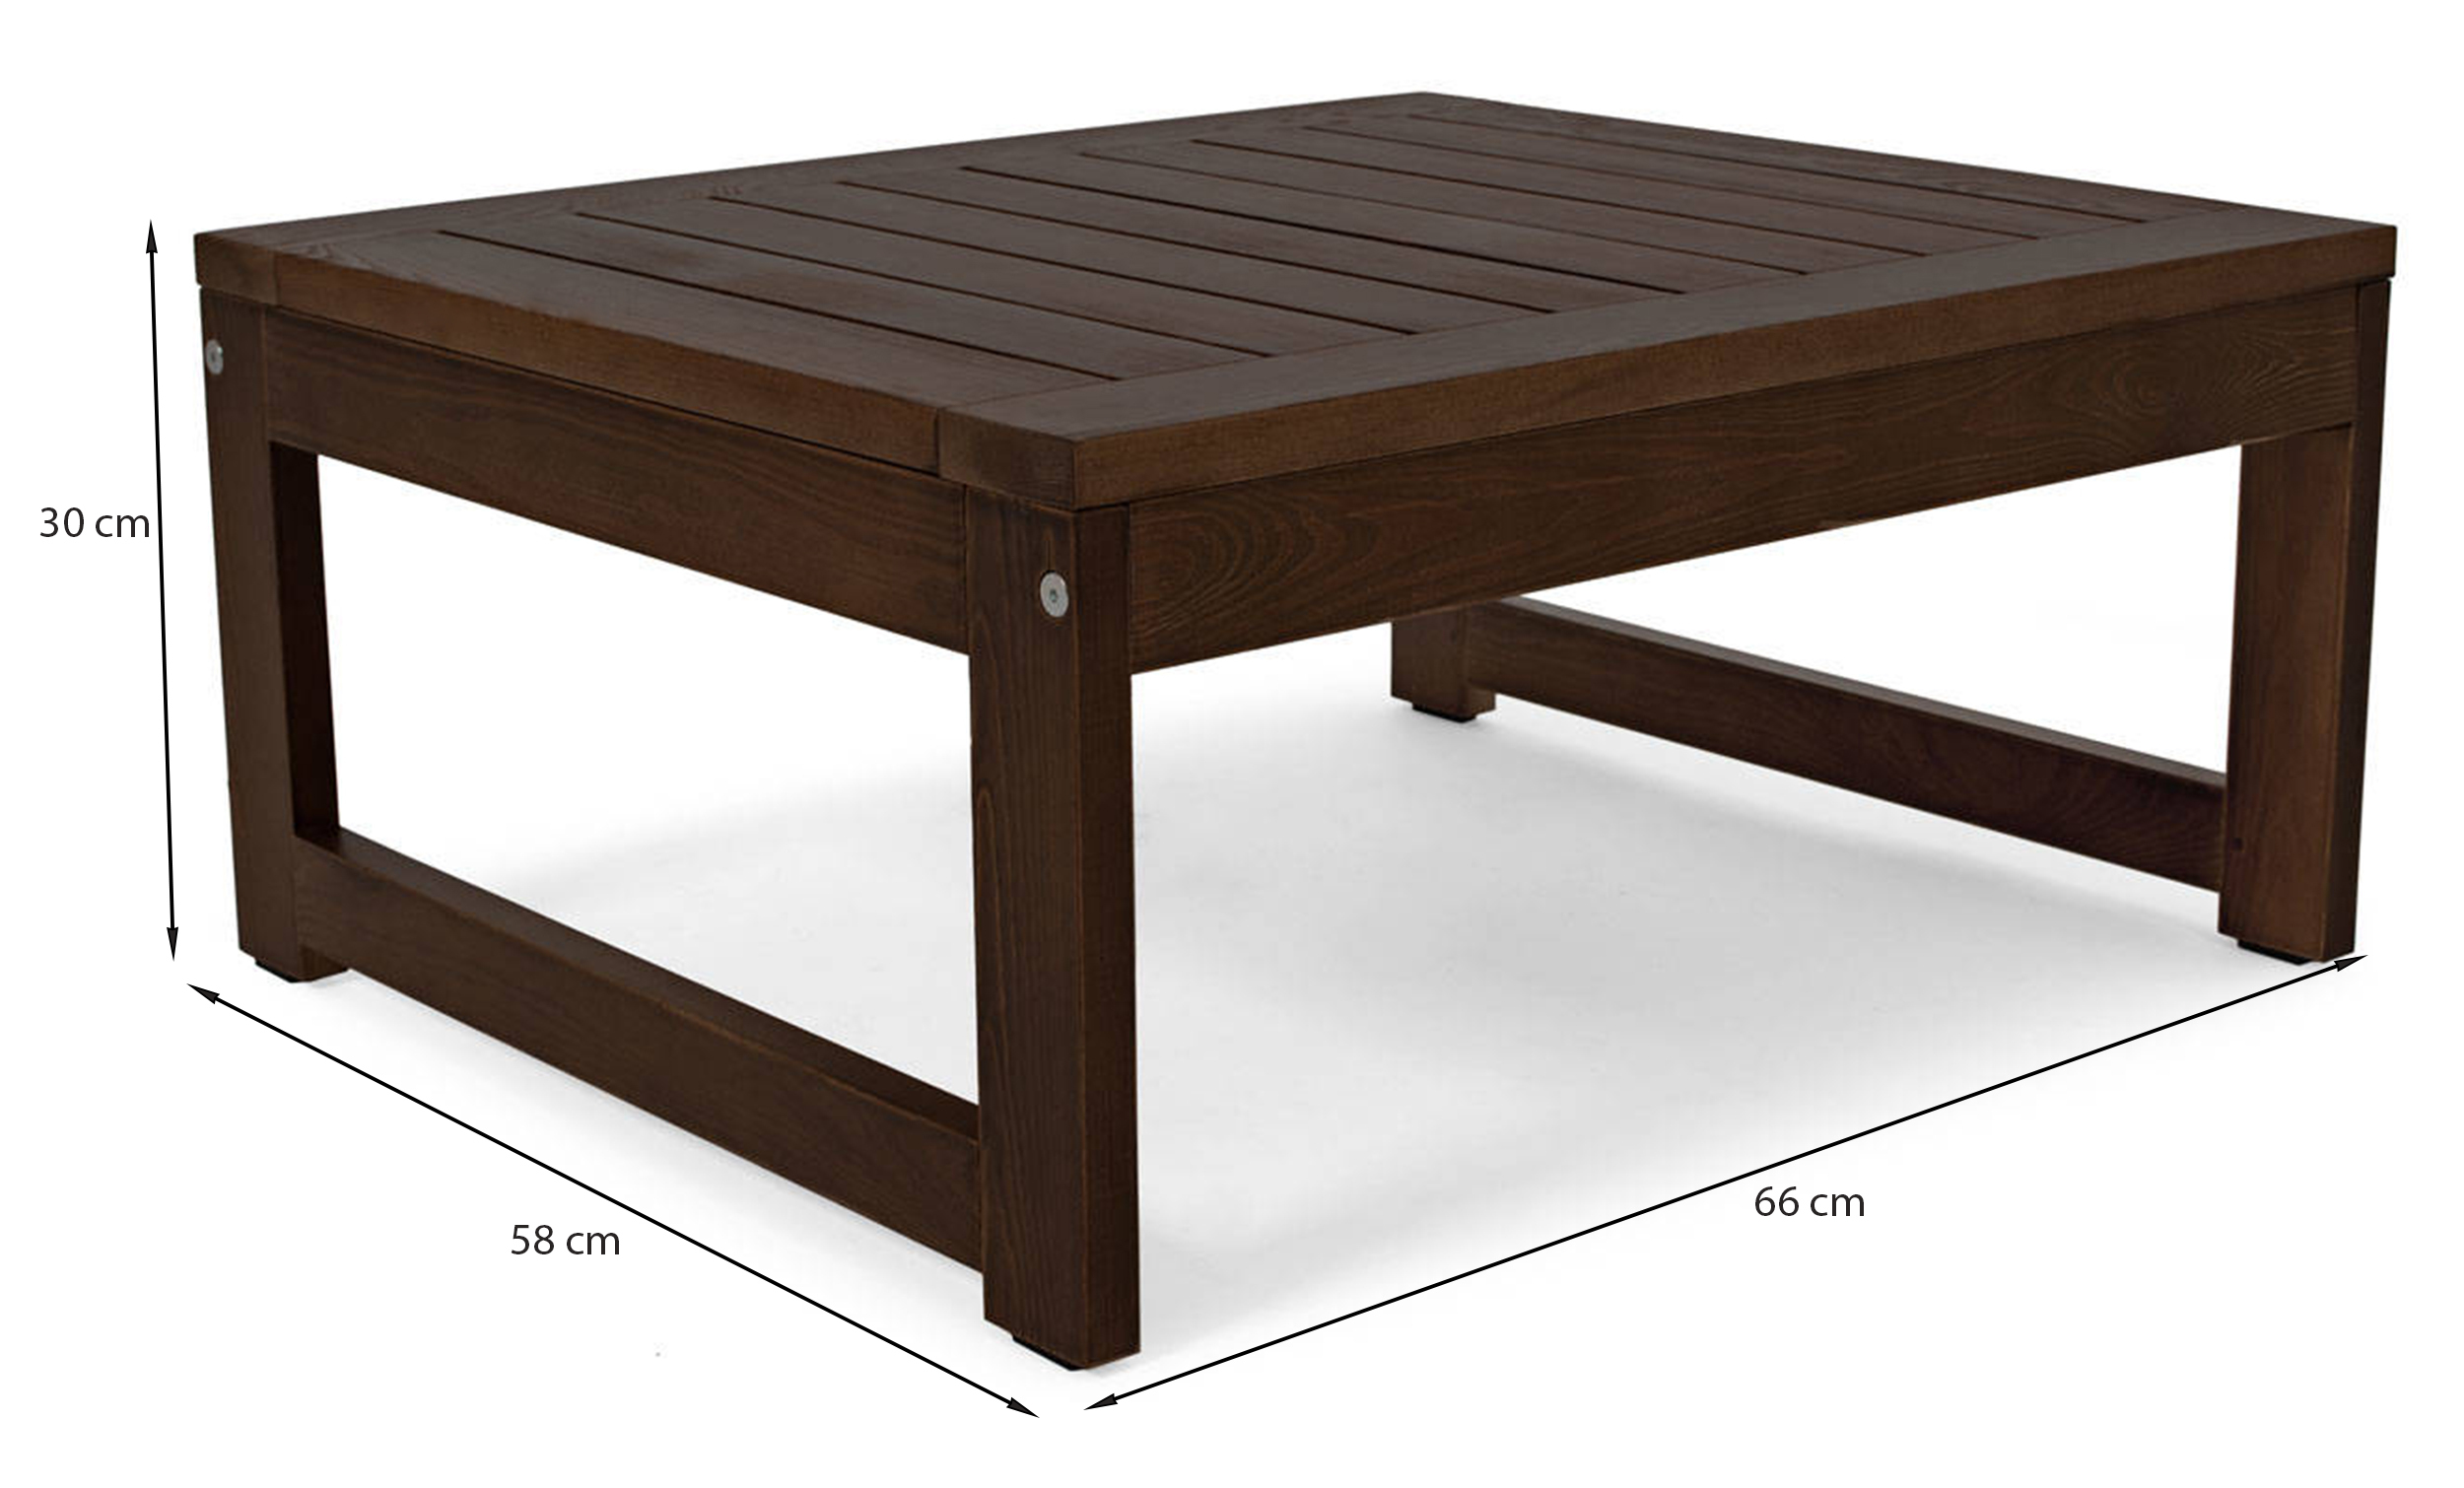 Zestaw mebli ogrodowych Ritalous z dwoma fotelami i stolikiem kawowym drewniany ciemnobrązowy/jasnoszary